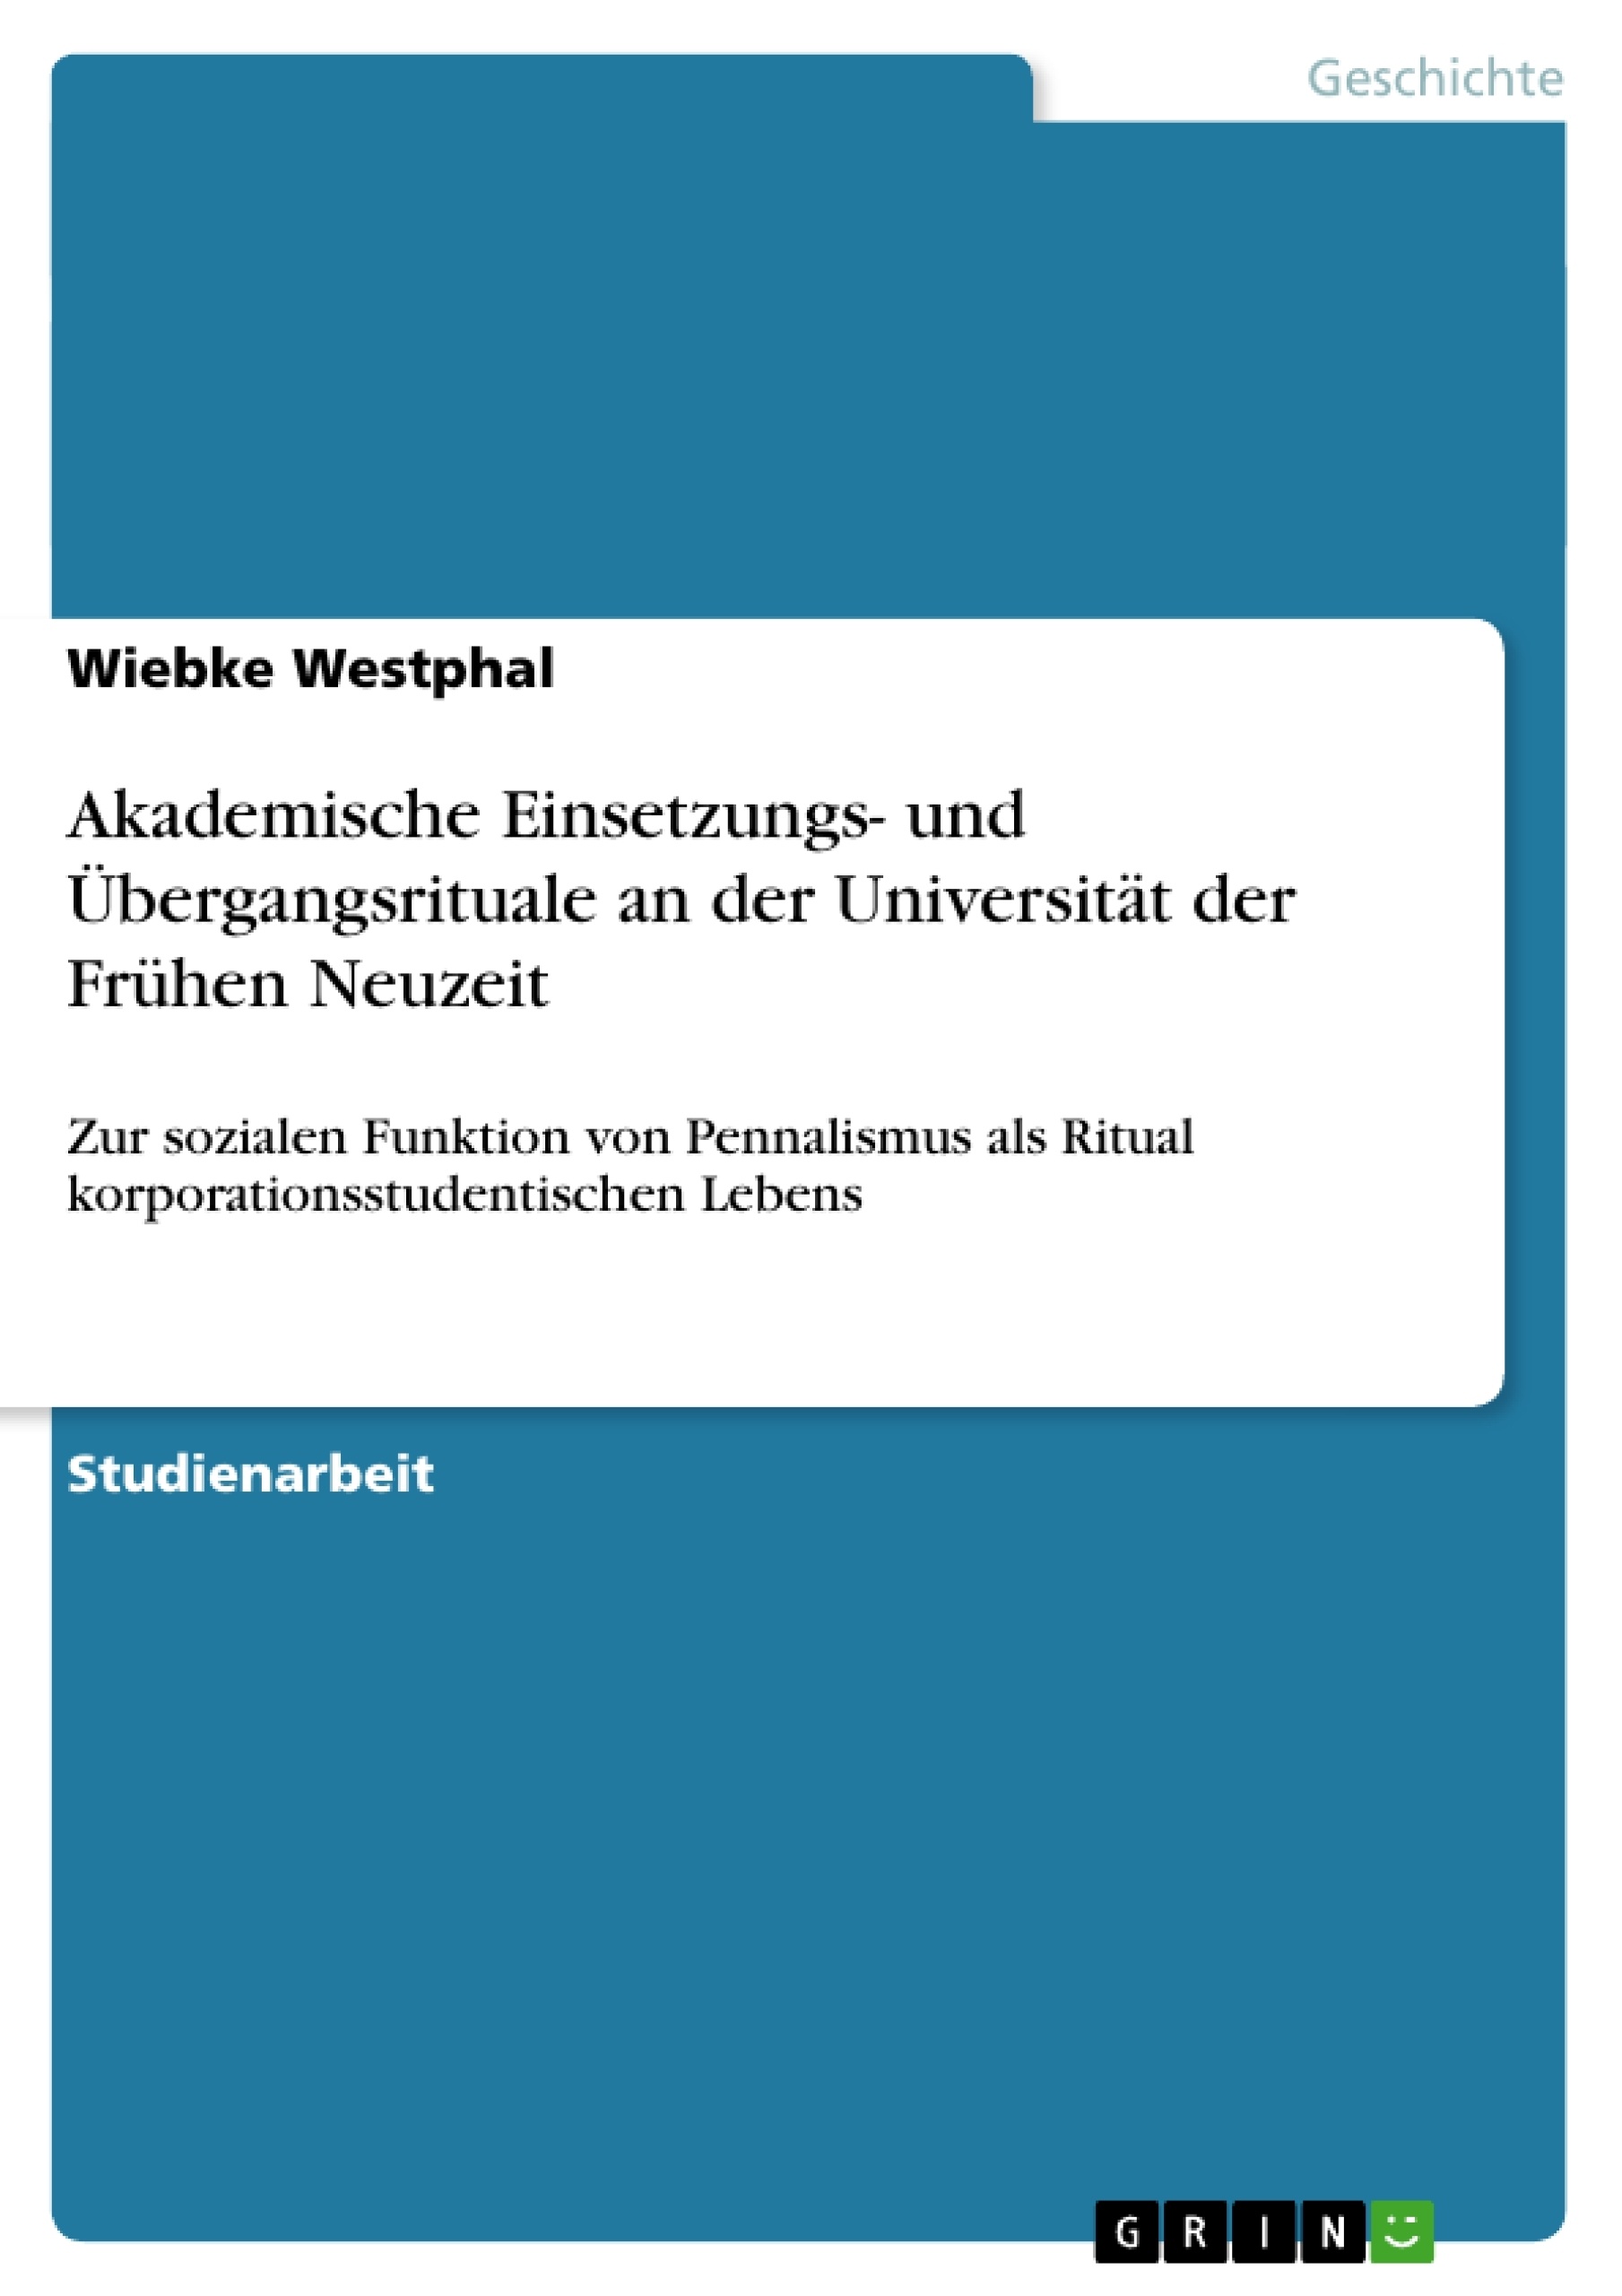 Titre: Akademische Einsetzungs- und Übergangsrituale an der Universität der Frühen Neuzeit